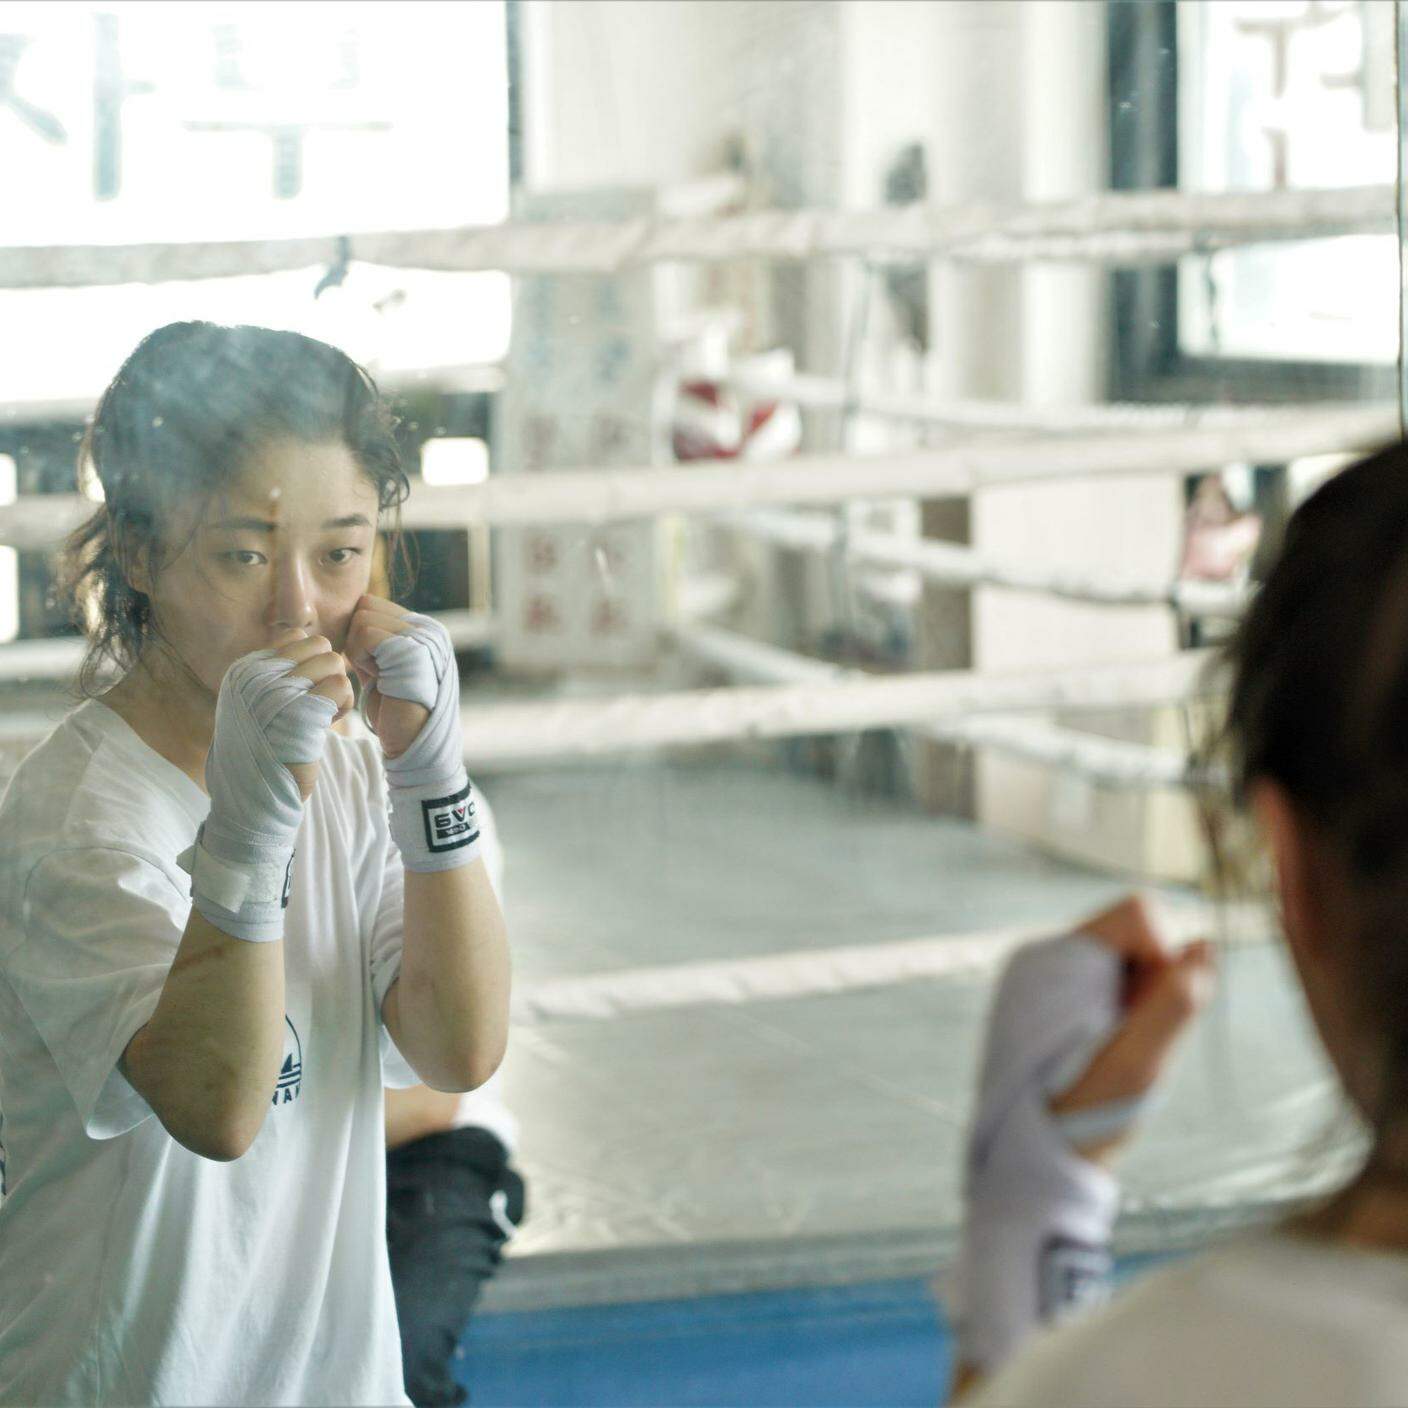 Fighter di Jéro Yun, 2020, Il film d'apertura del festival racconta la lotta di Jina, una giovane rifugiata nordcoreana che trova nella passione per la boxe un'occasione di riscatto